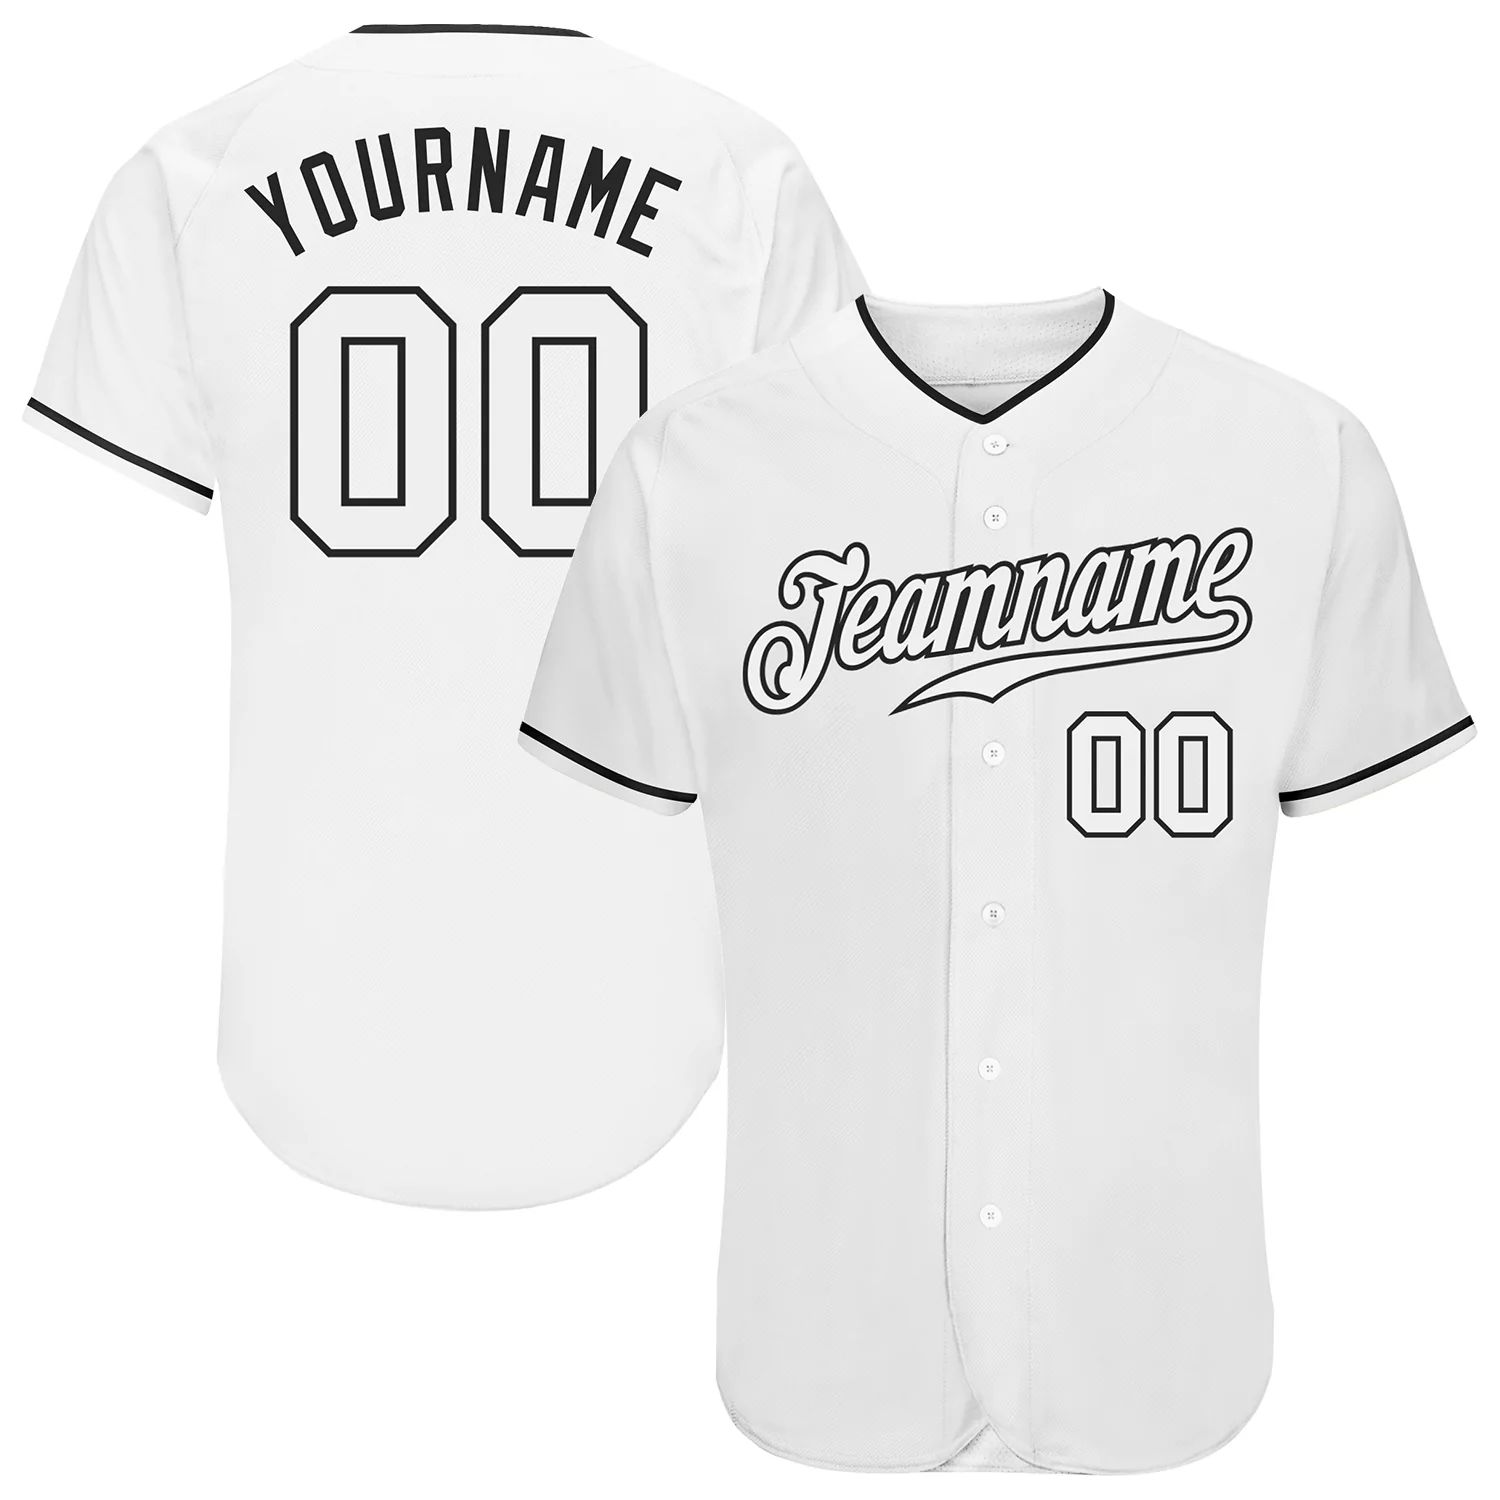 build-black-white-baseball-white-jersey-authentic-white0505-online-1.jpg